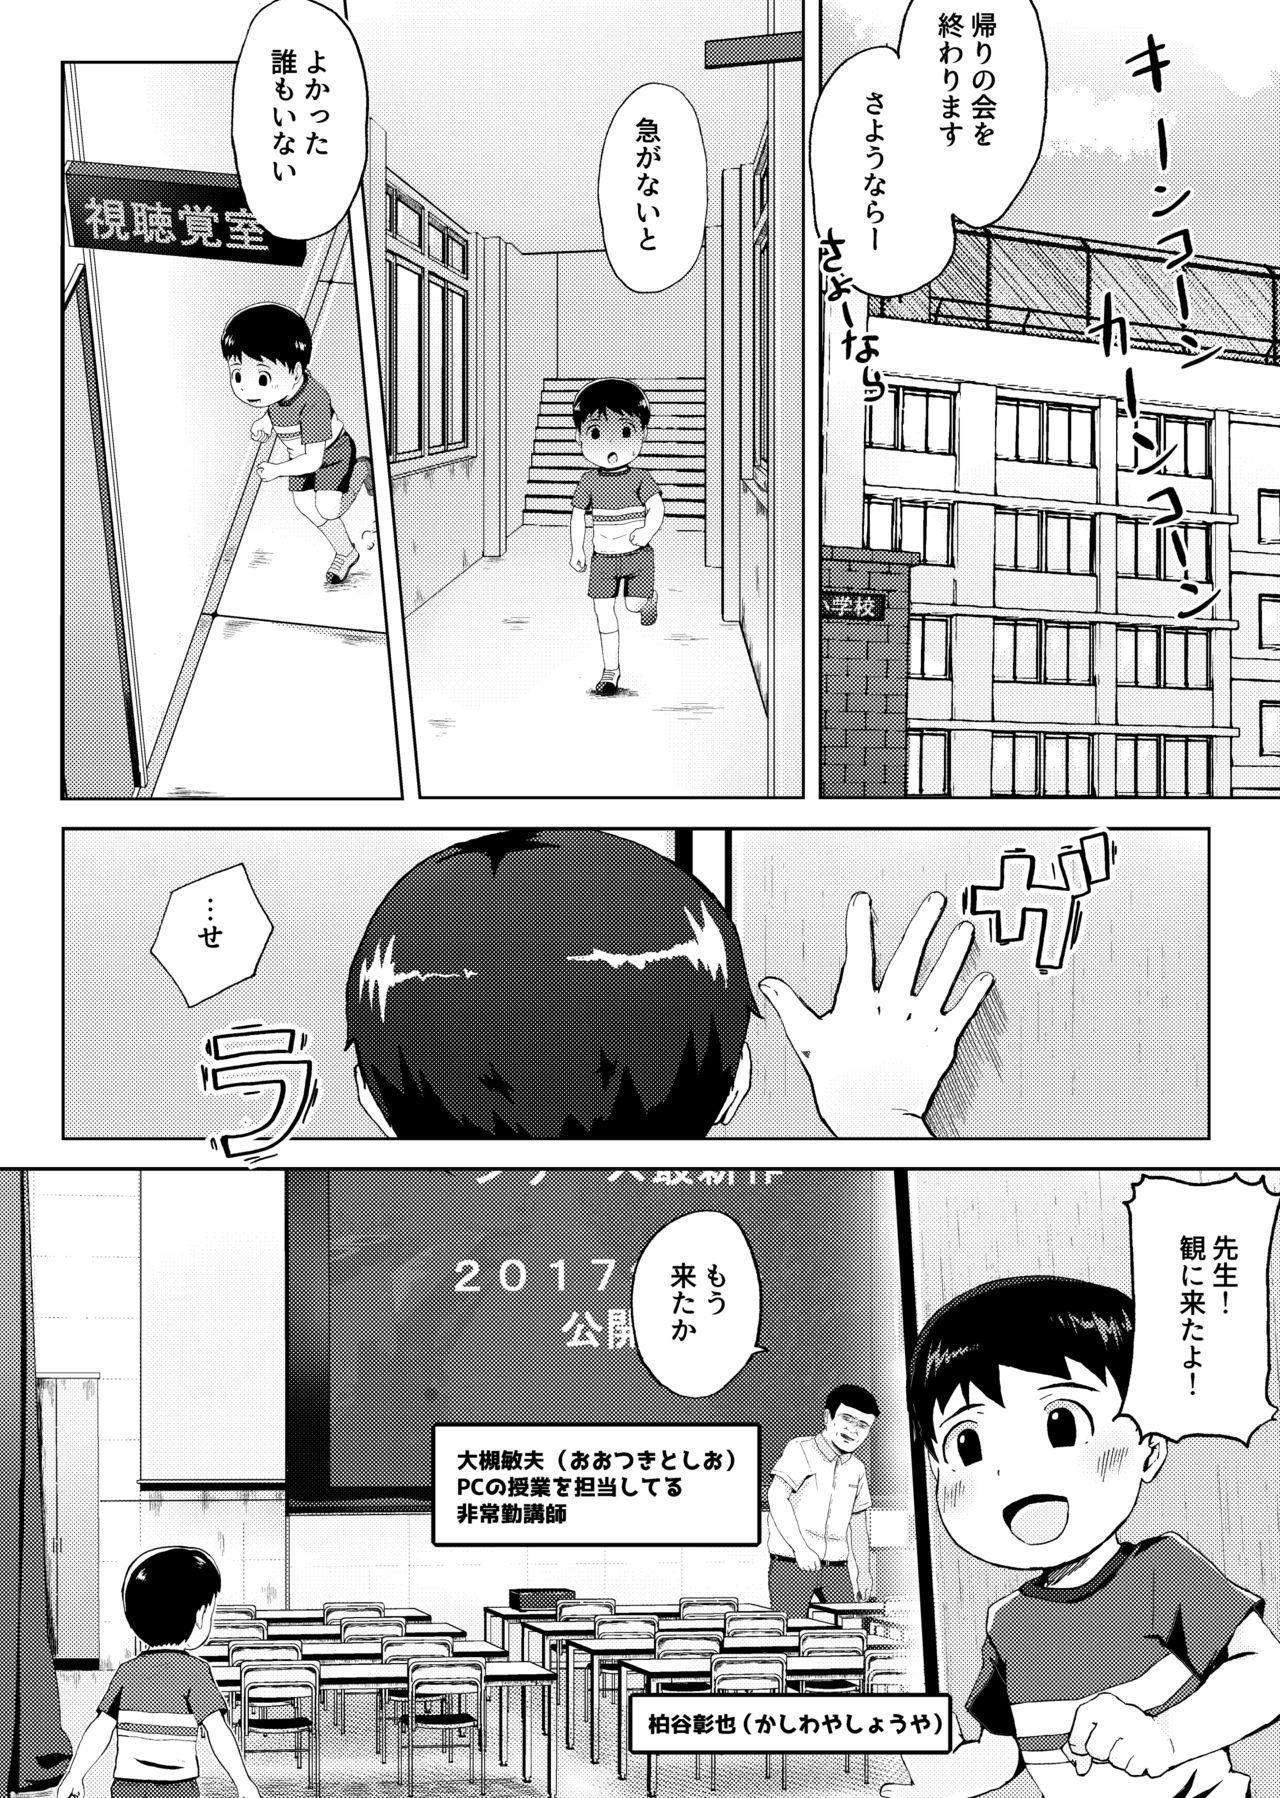 Teensnow Himitsu no Shichoukakushitsu - Original Exibicionismo - Page 2